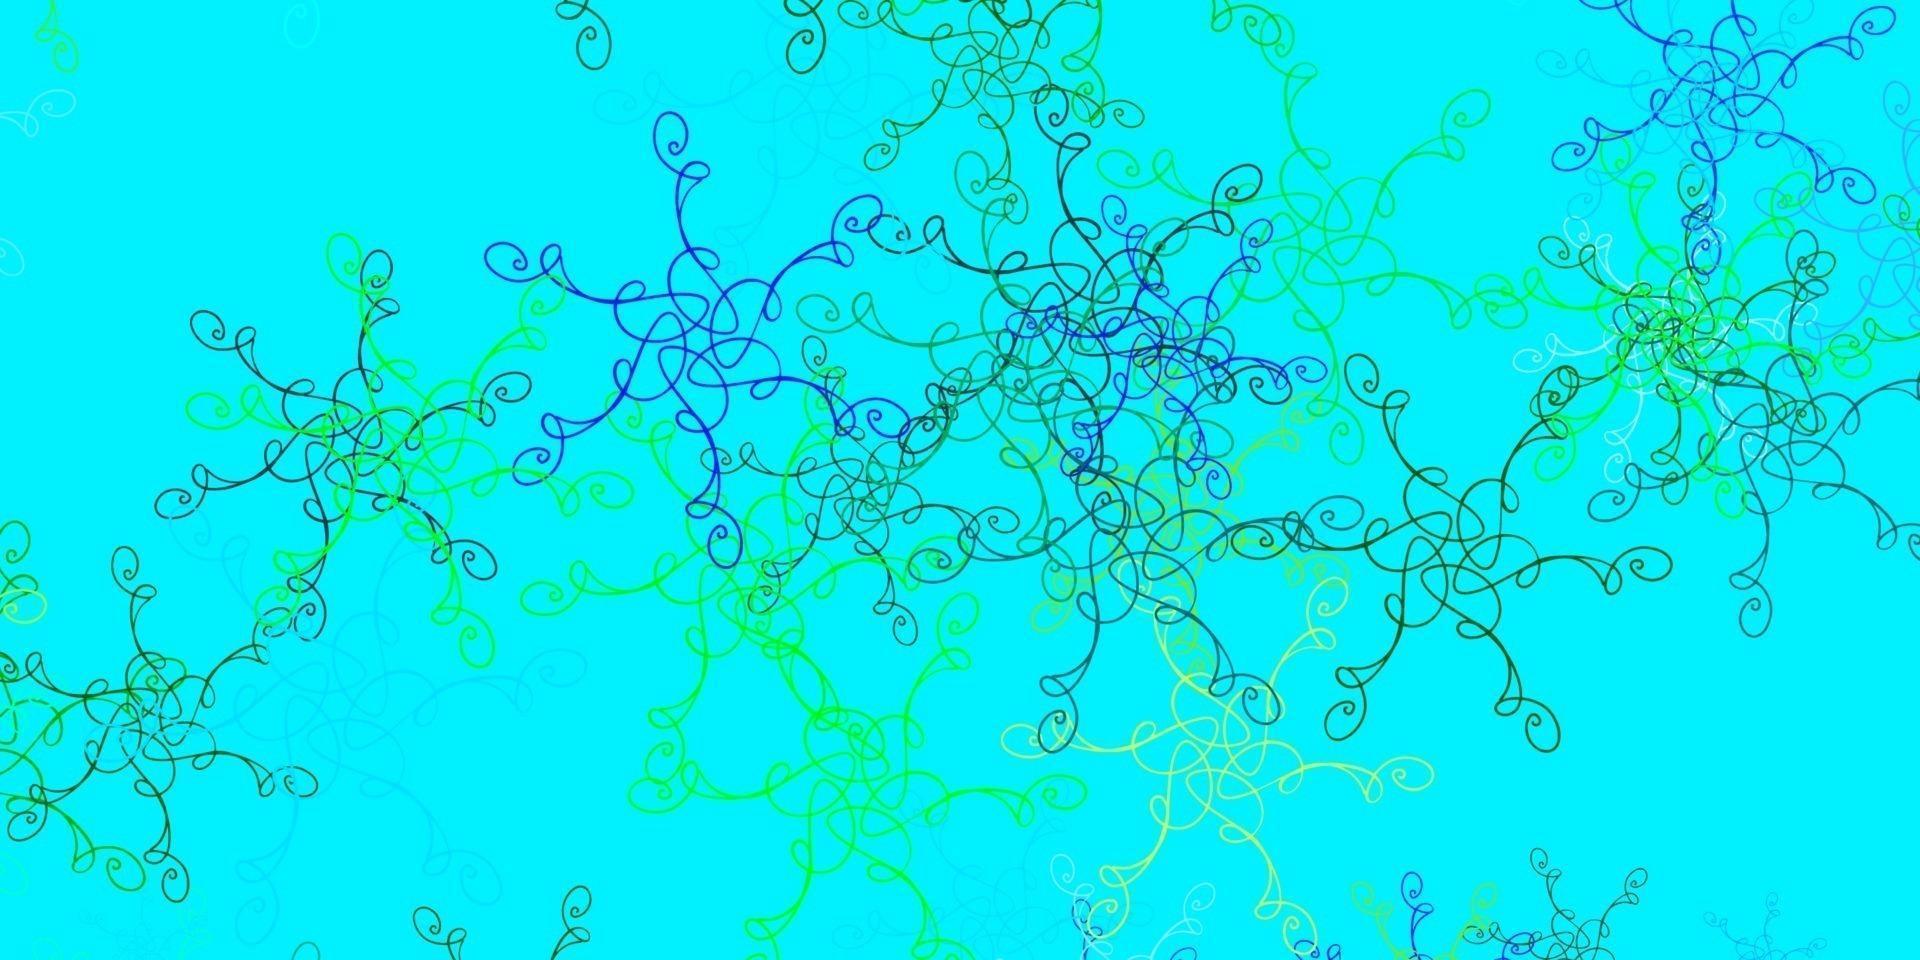 textura de vector azul claro, verde con arco circular.